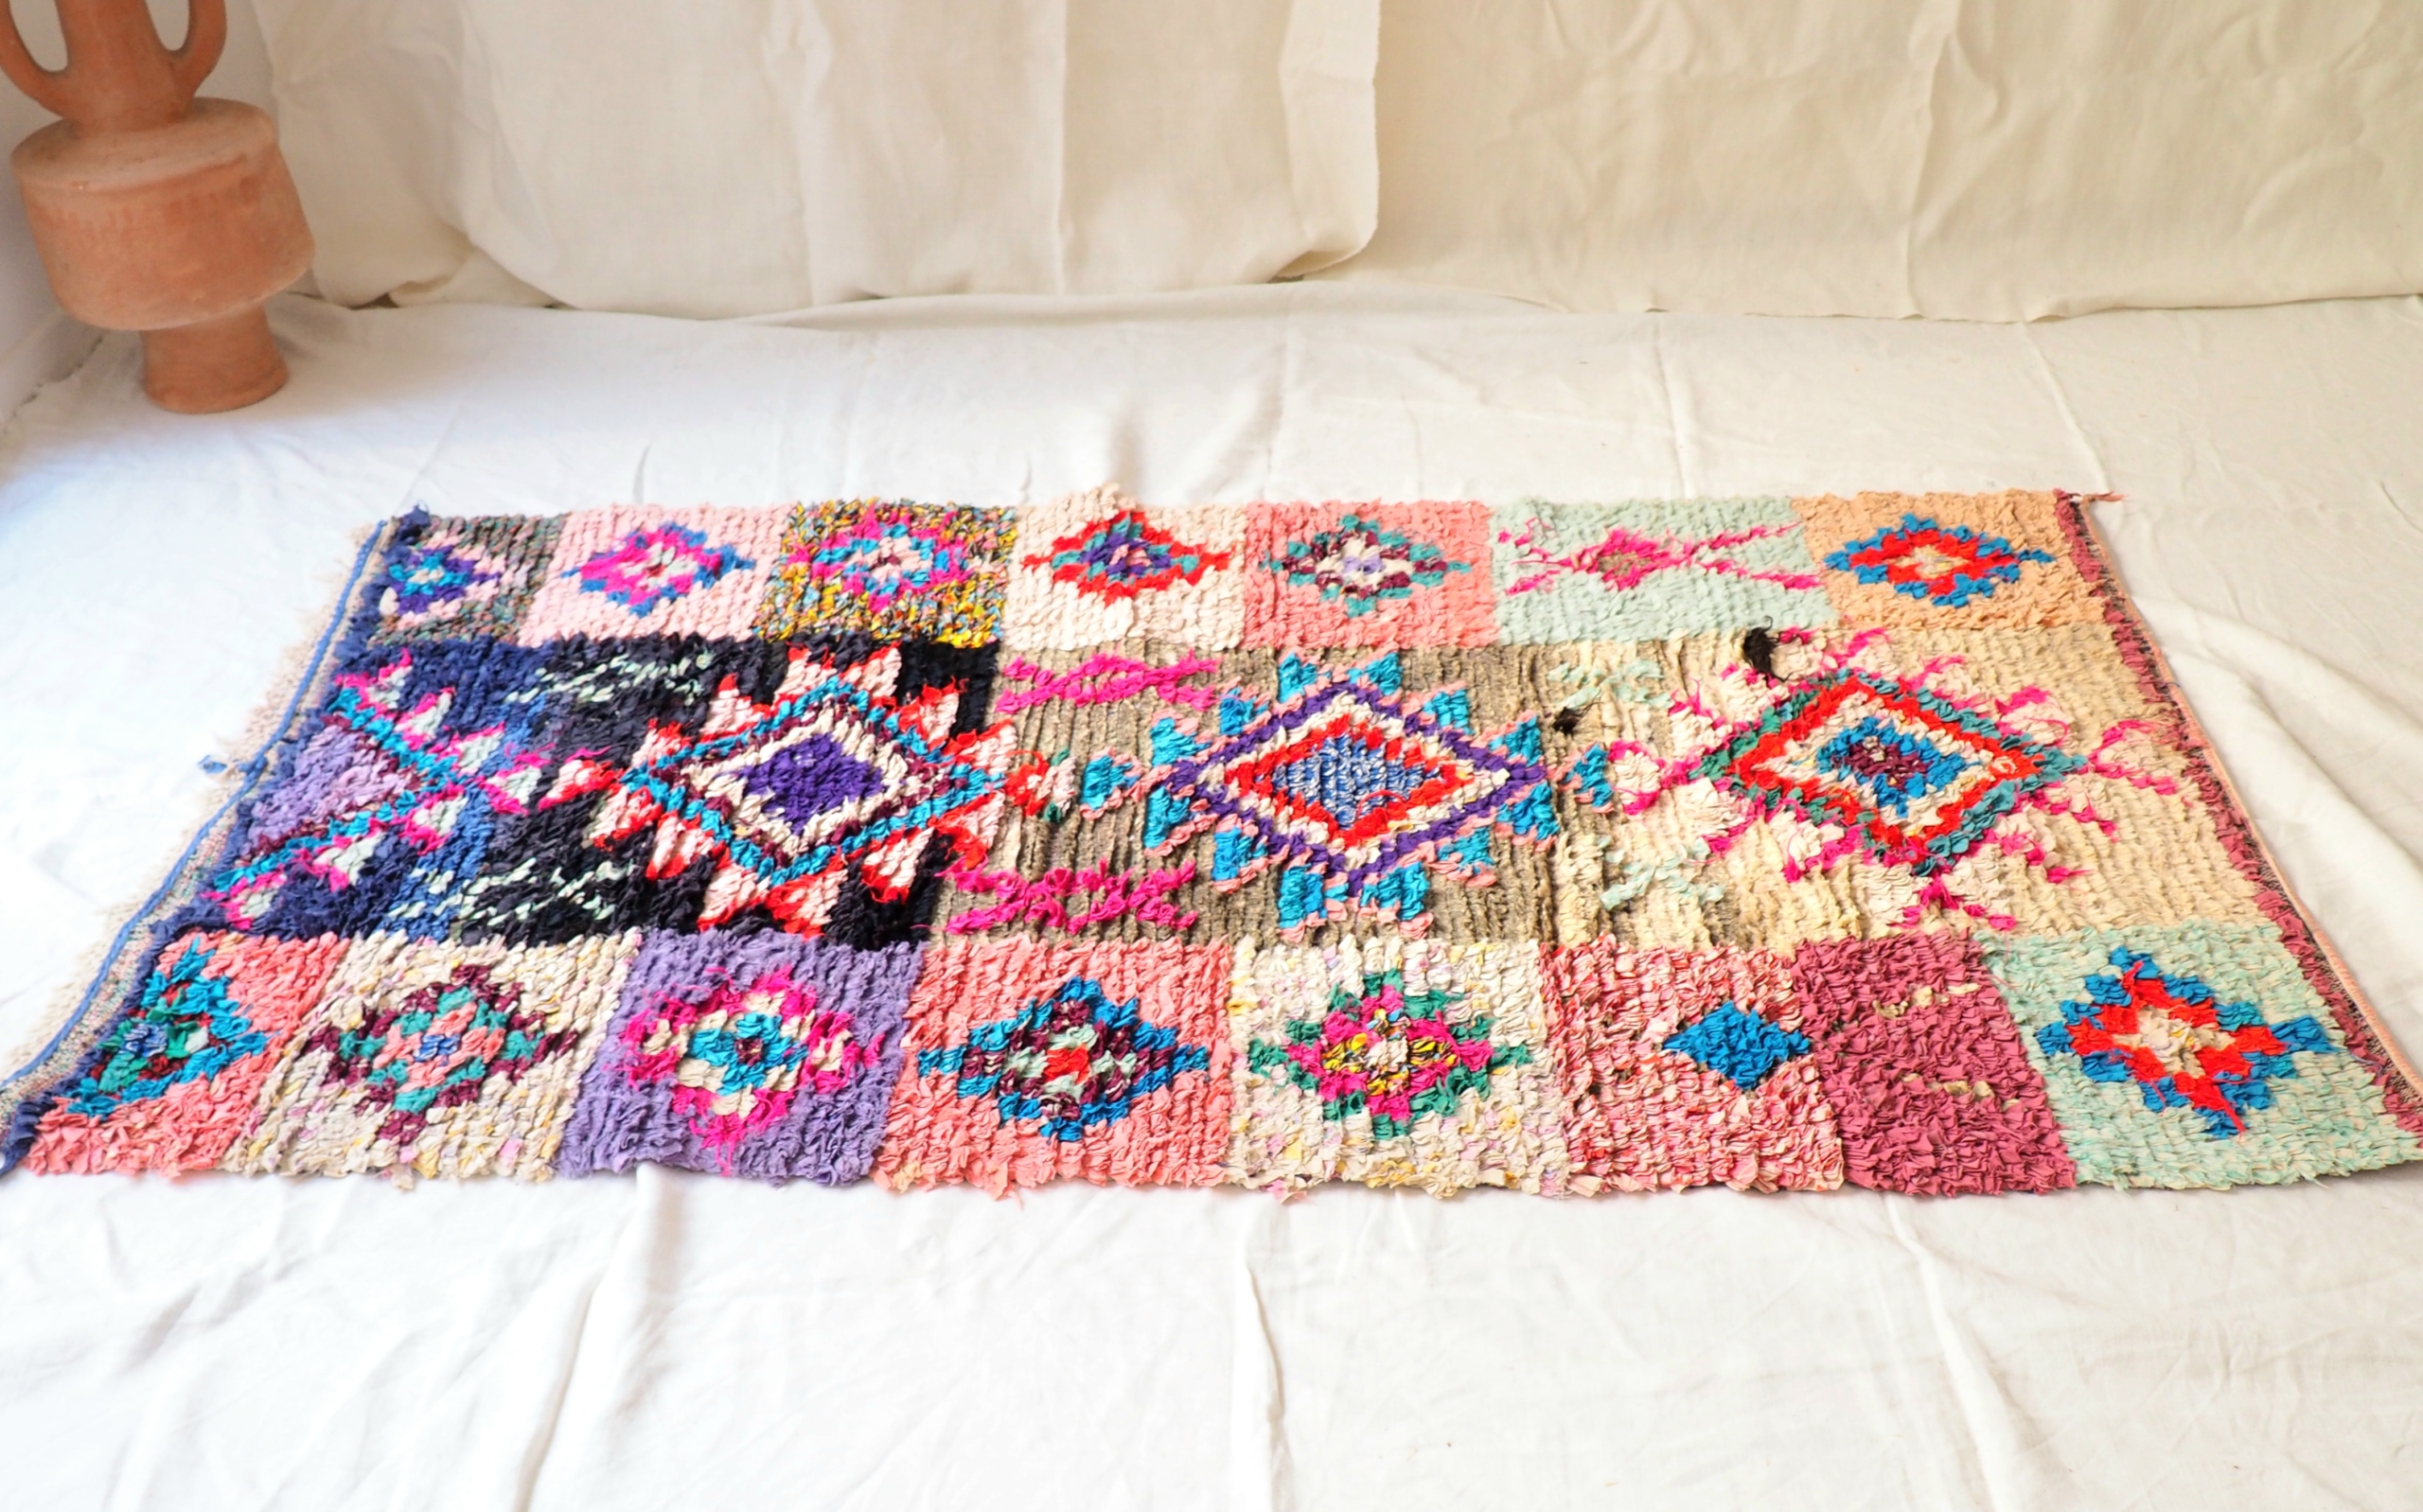 tapis épais coloré fait artisanalement au Maroc de conception ethique et ecologique